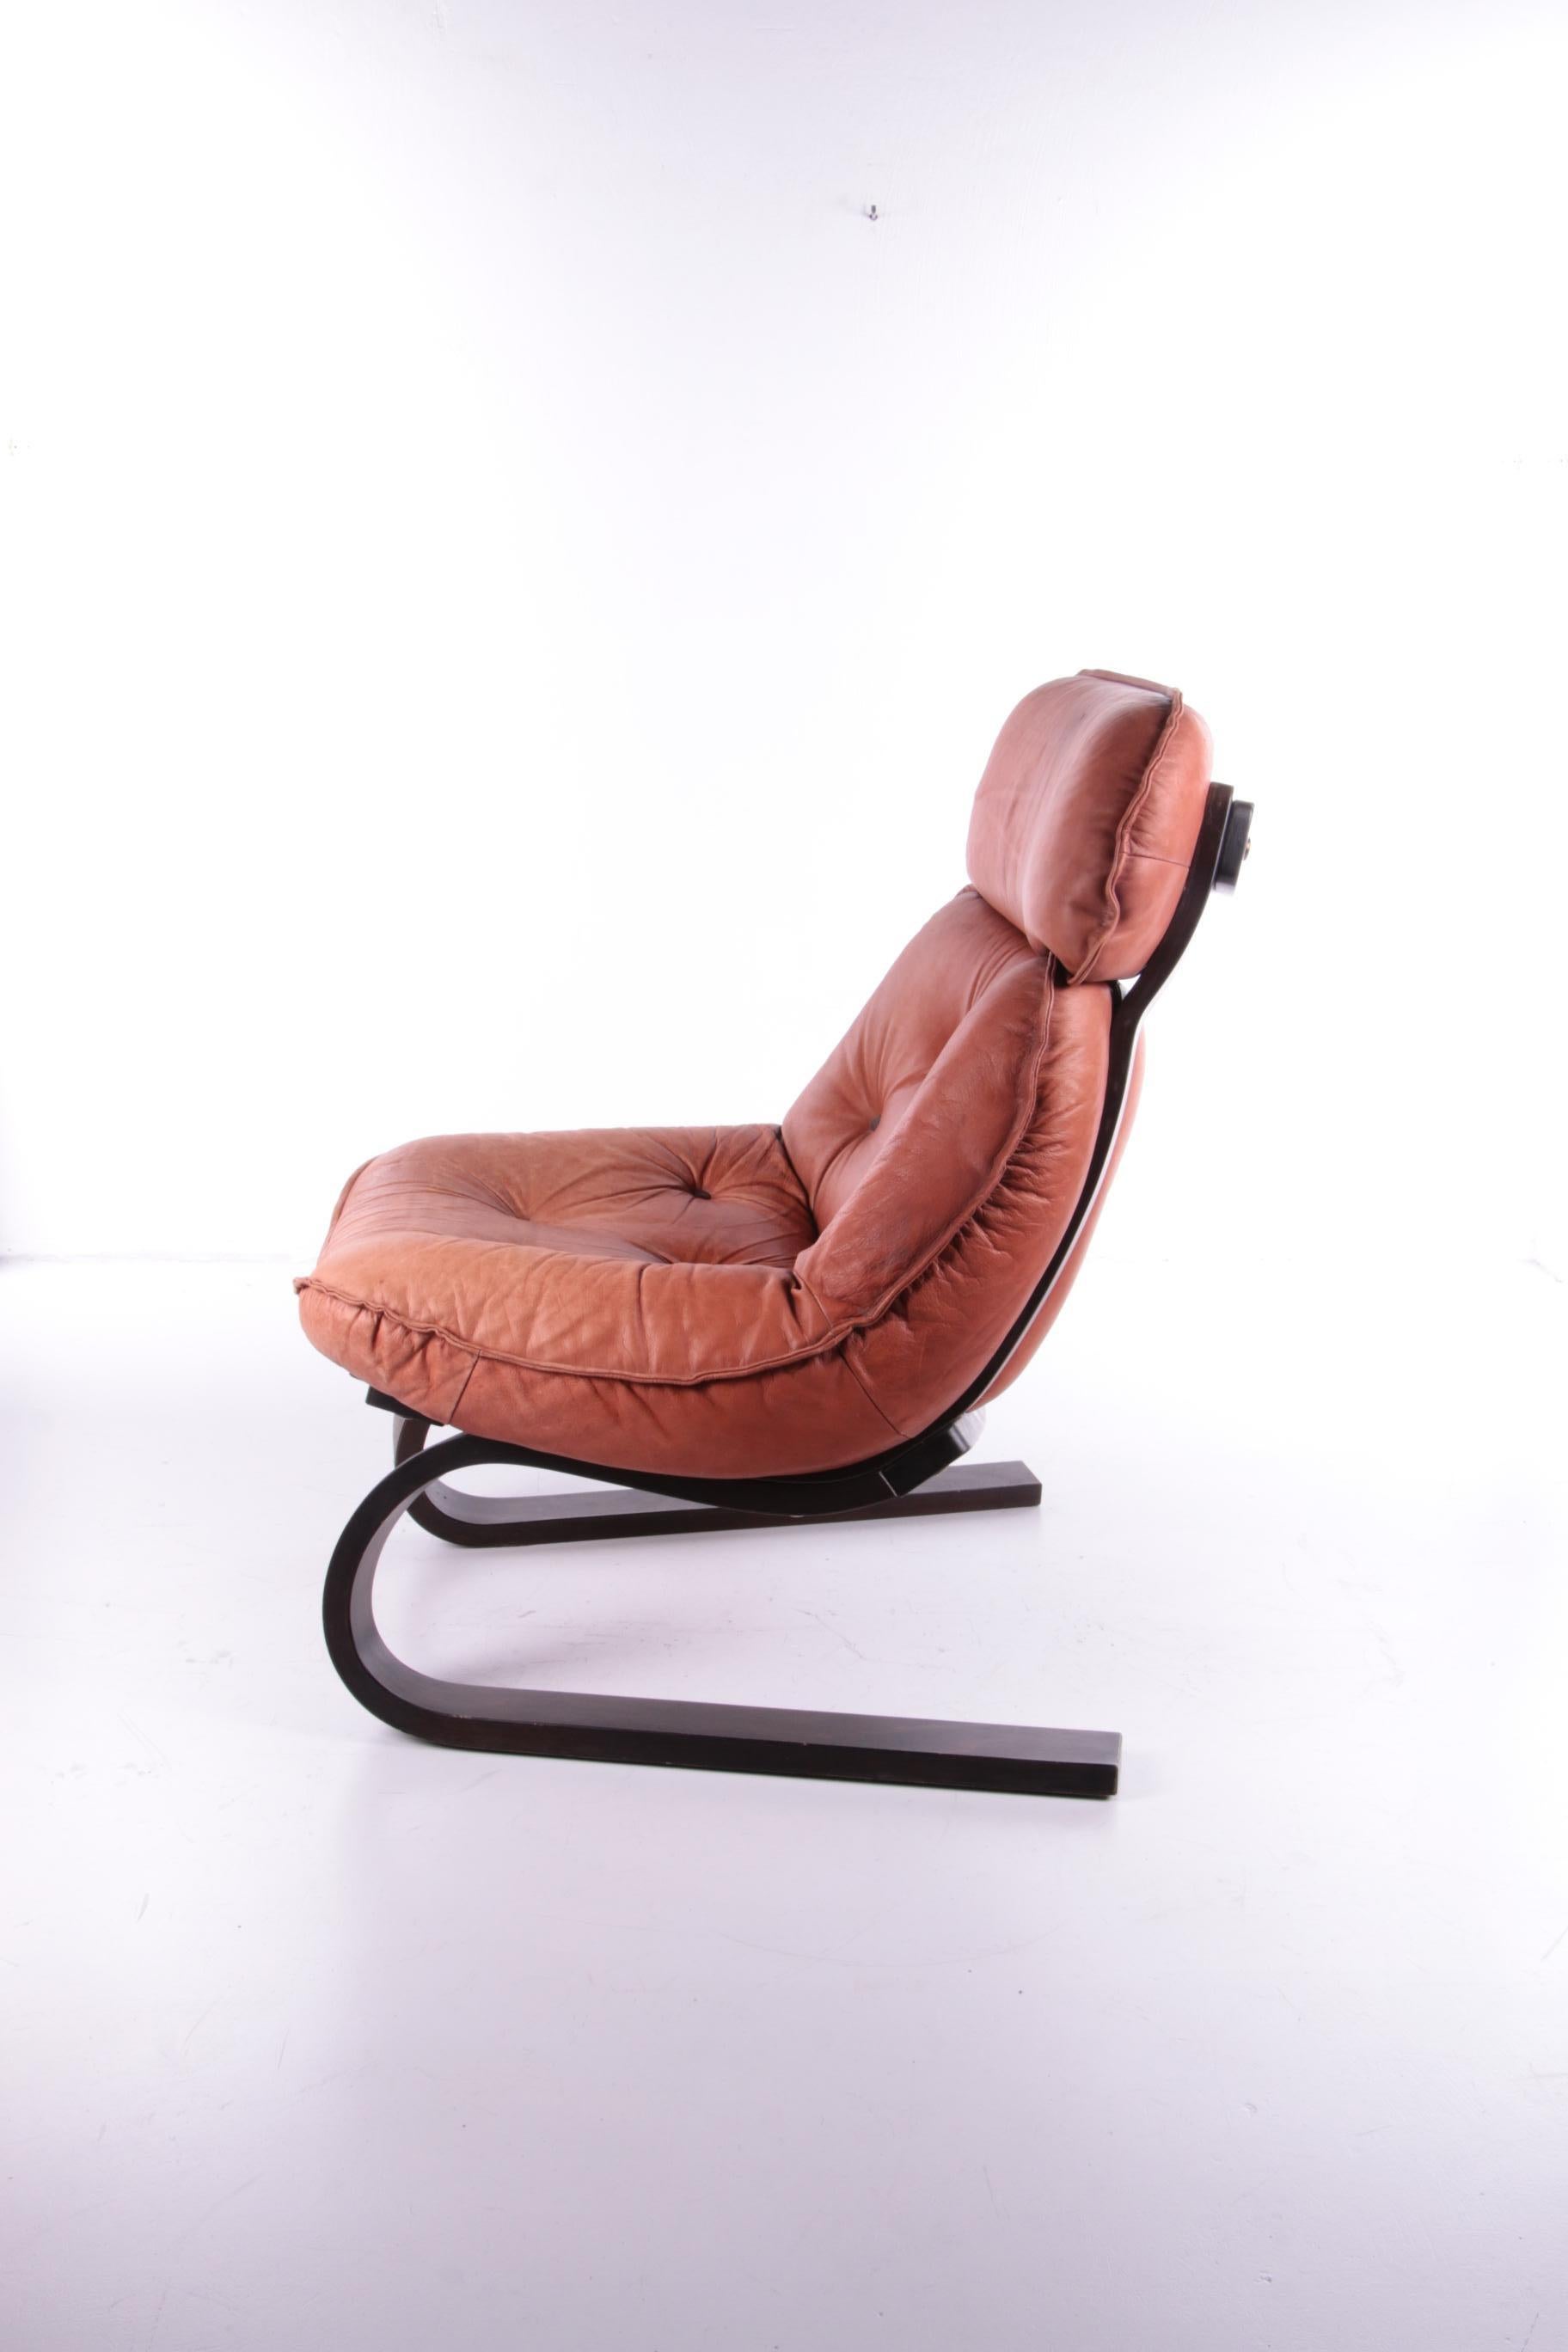 70's armchair